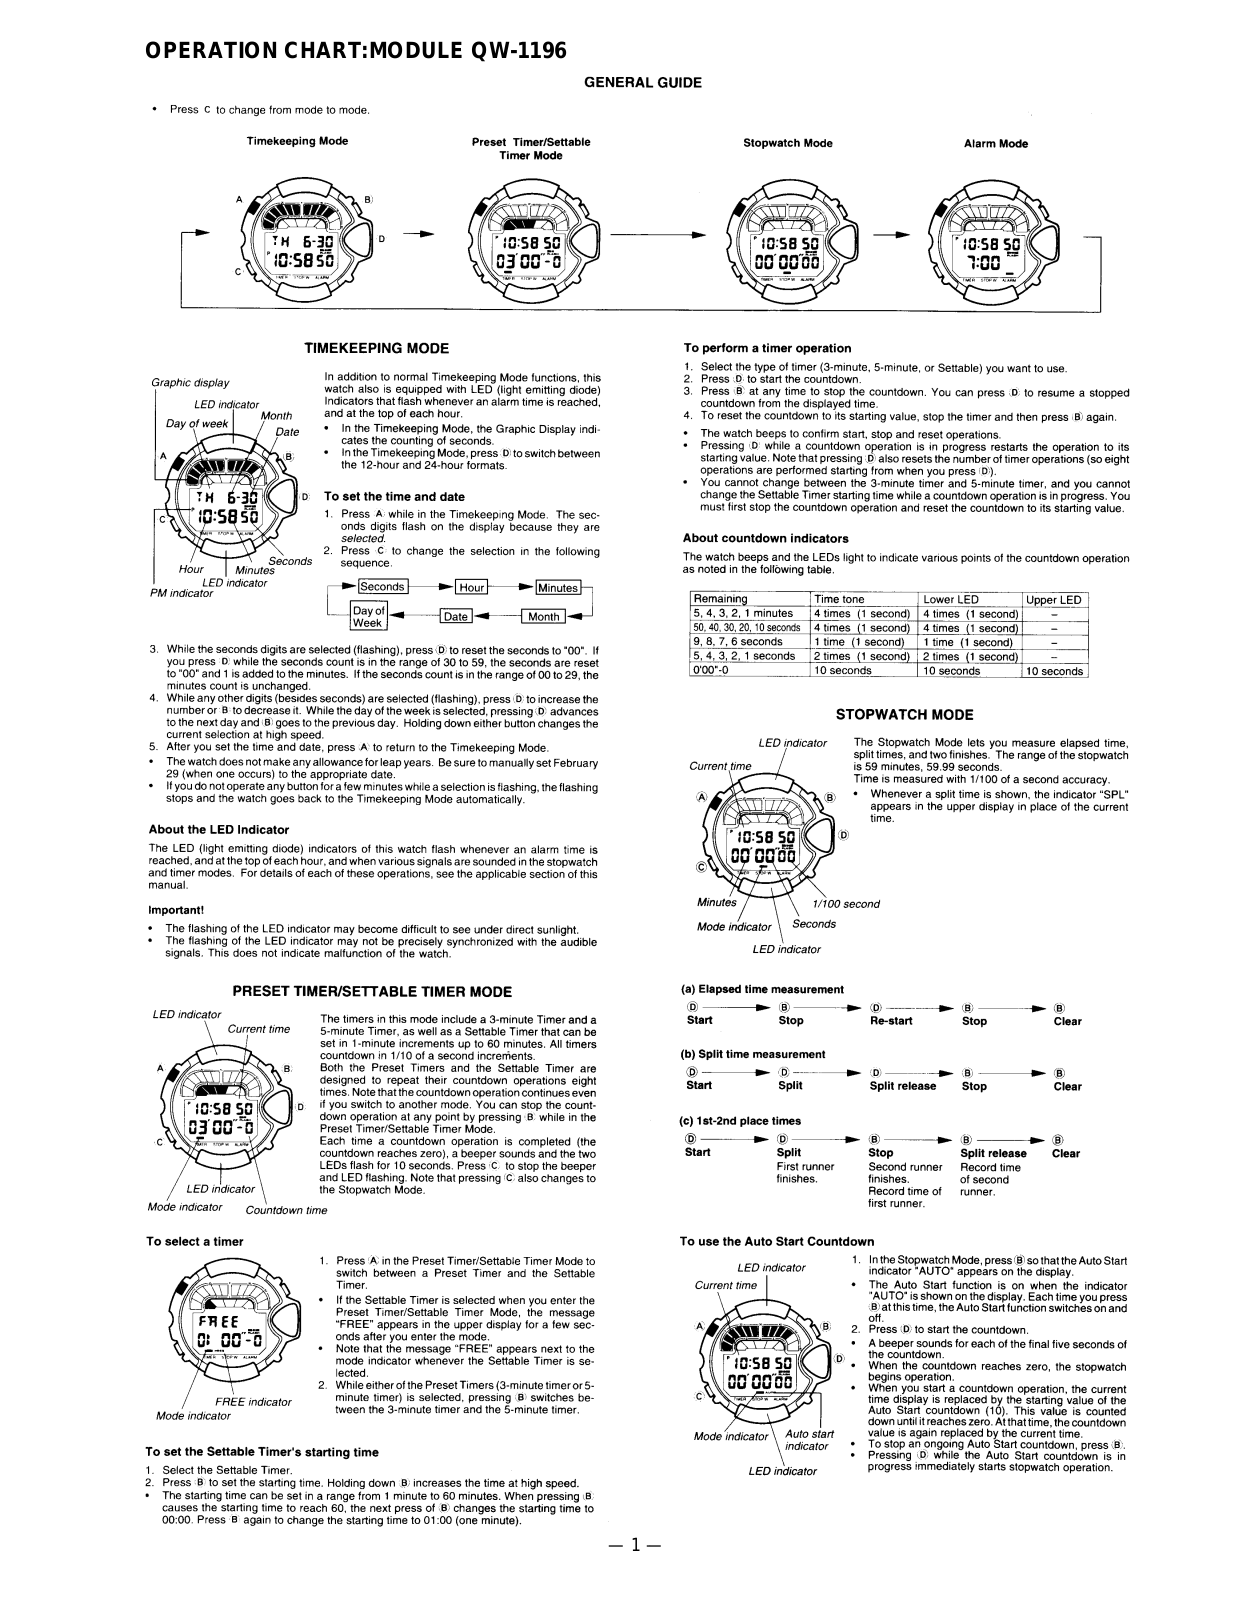 Casio 1196 Owner's Manual